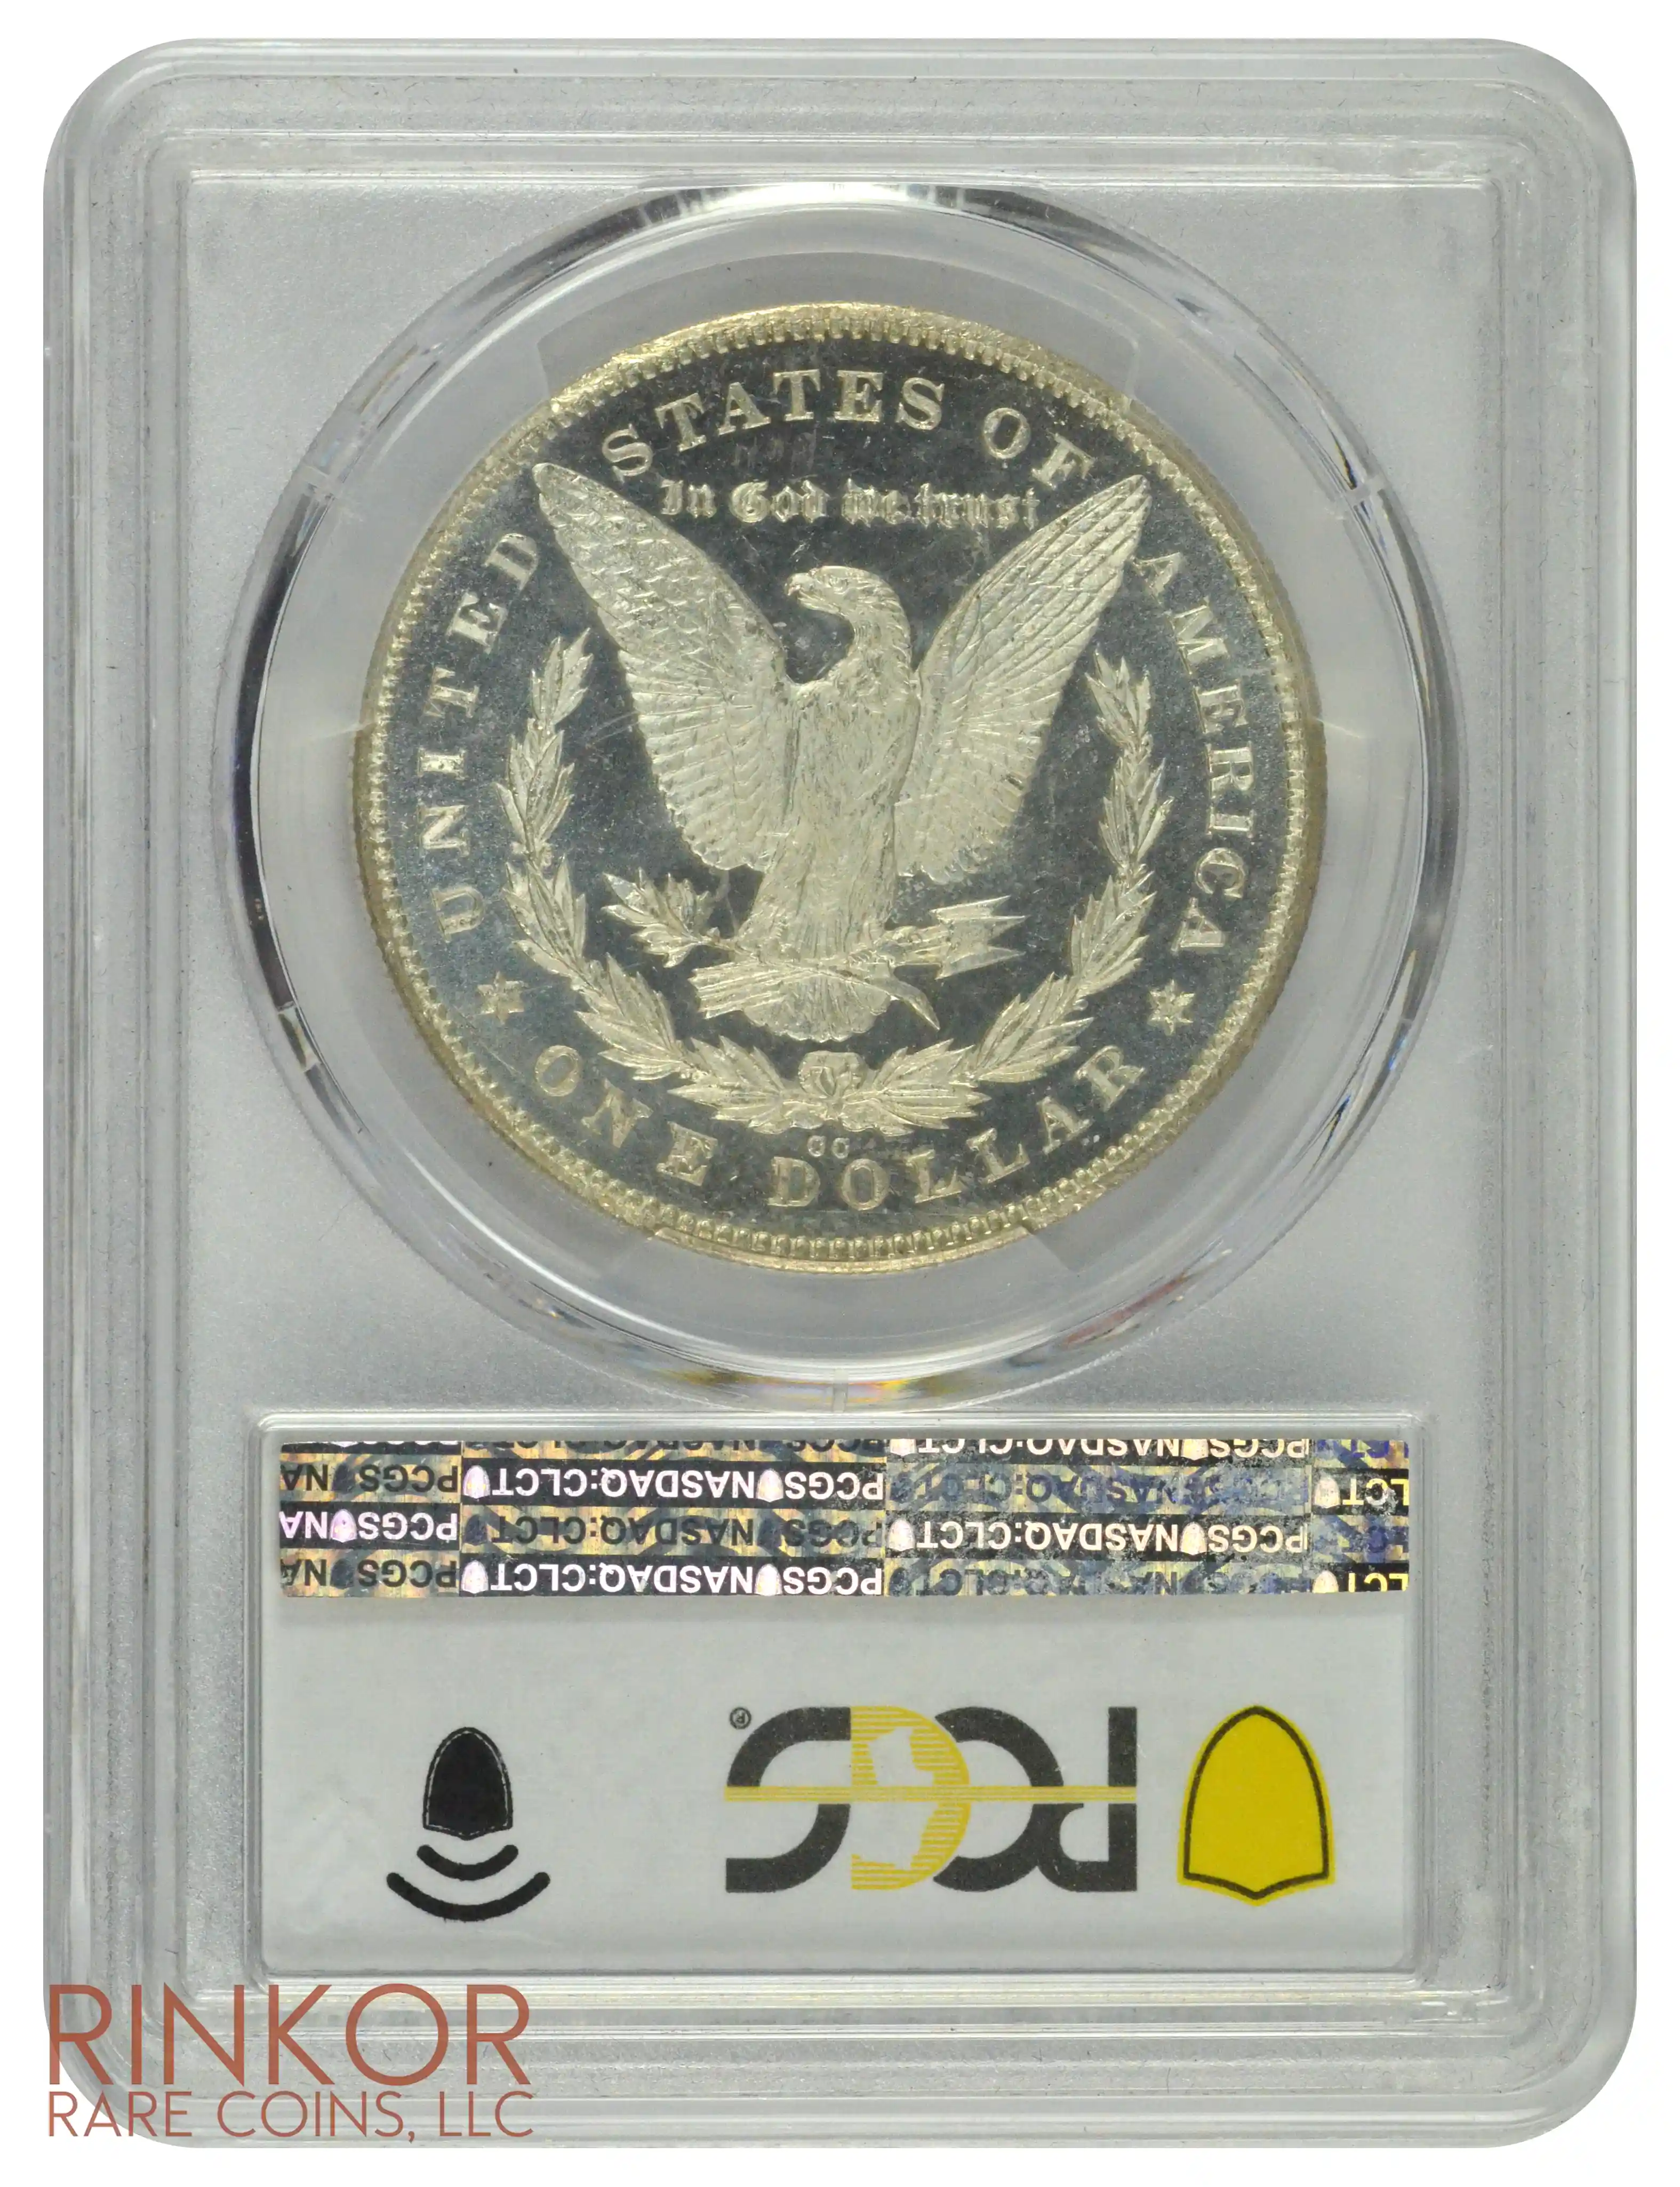 1878-CC $1 PCGS MS 63 DMPL CAC